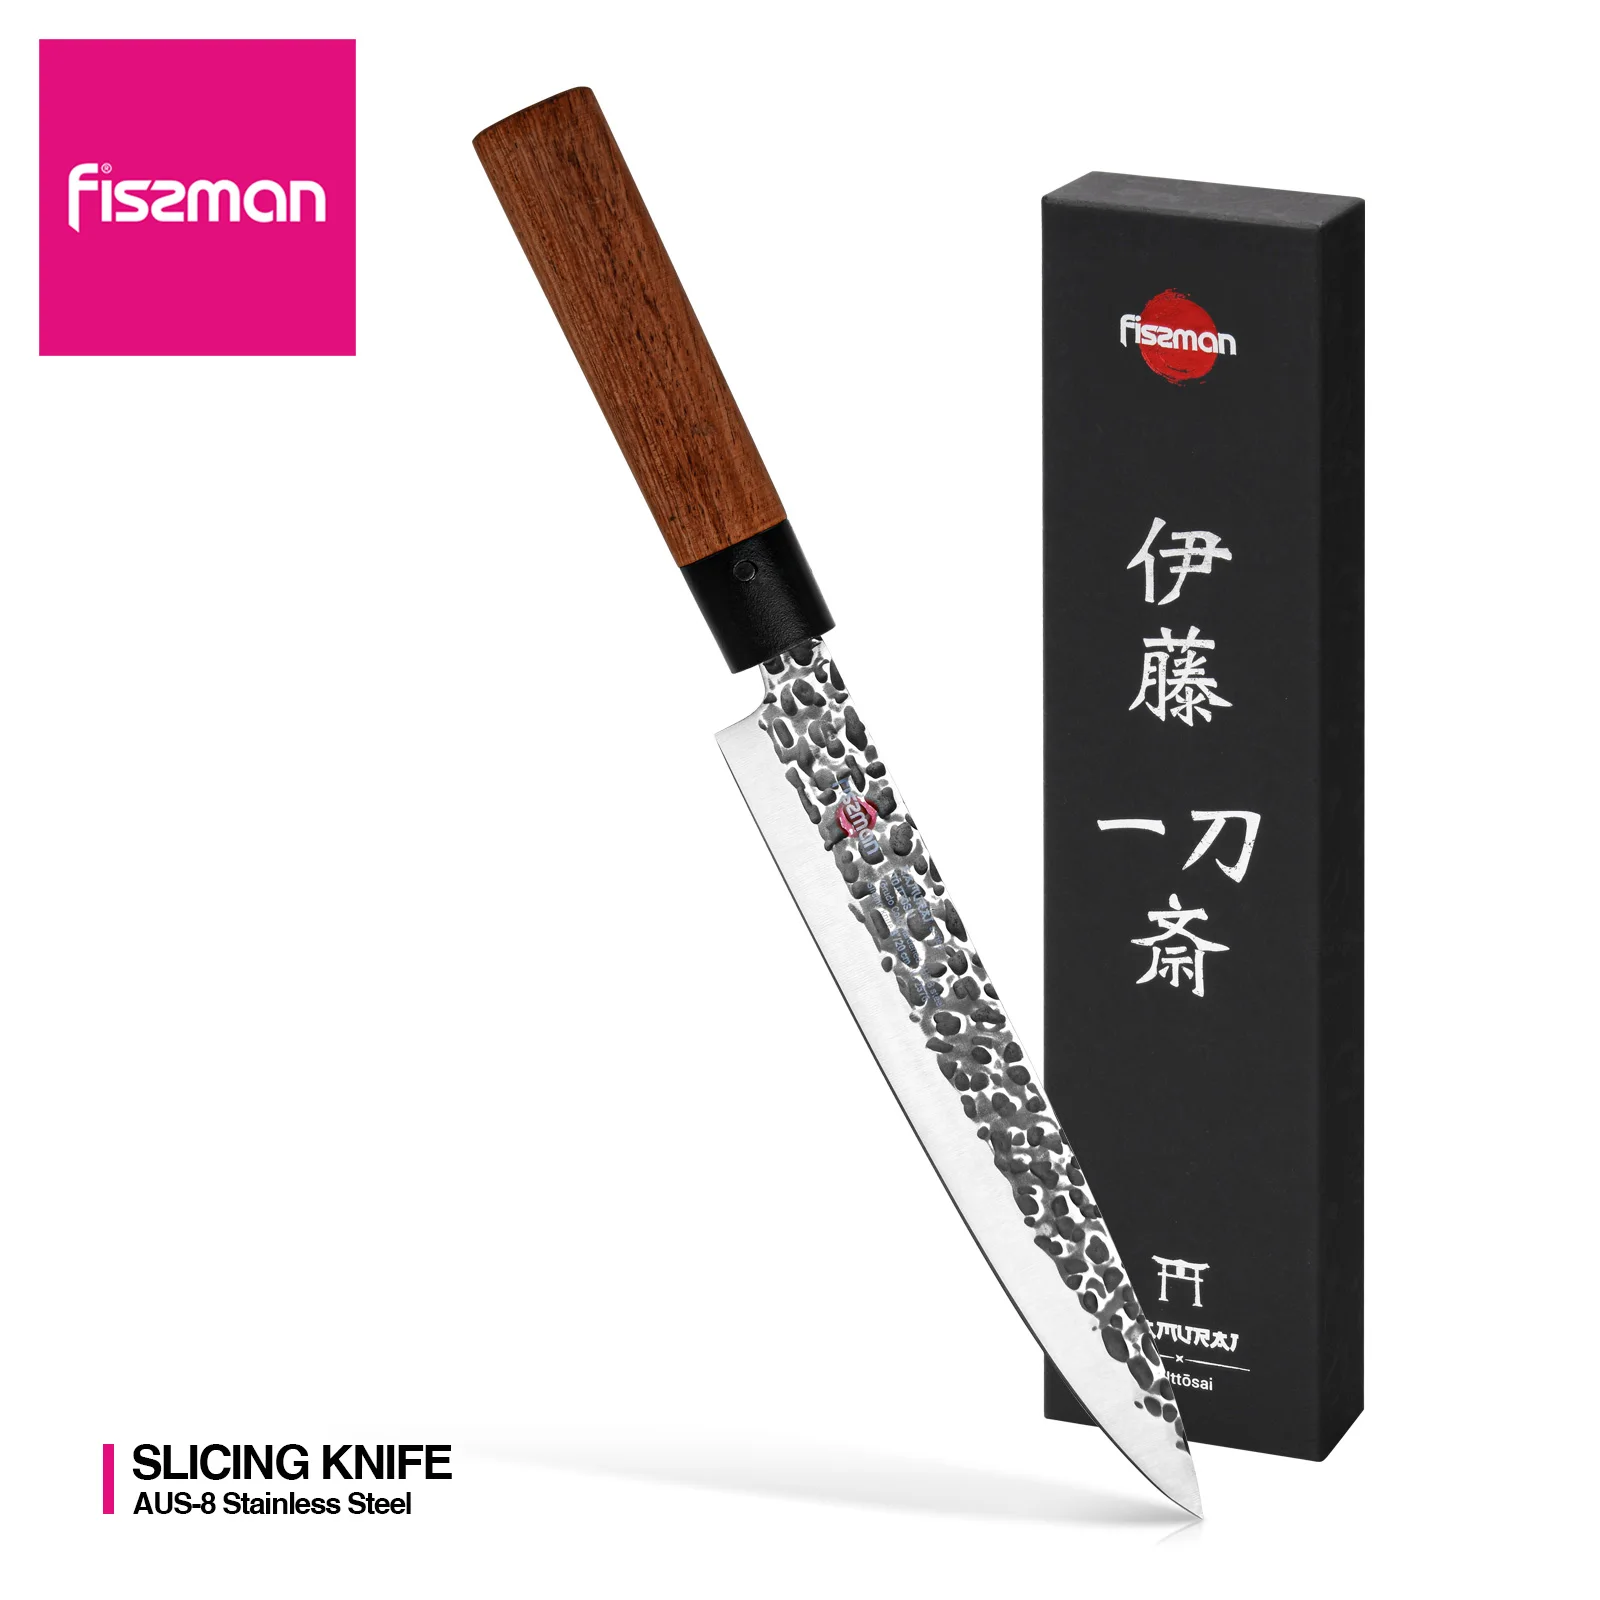 Fissman 8-дюймовый Нож для нарезки SAMURAI ITTOSAI серии AUS-8 стальные кухонные ножи - купить